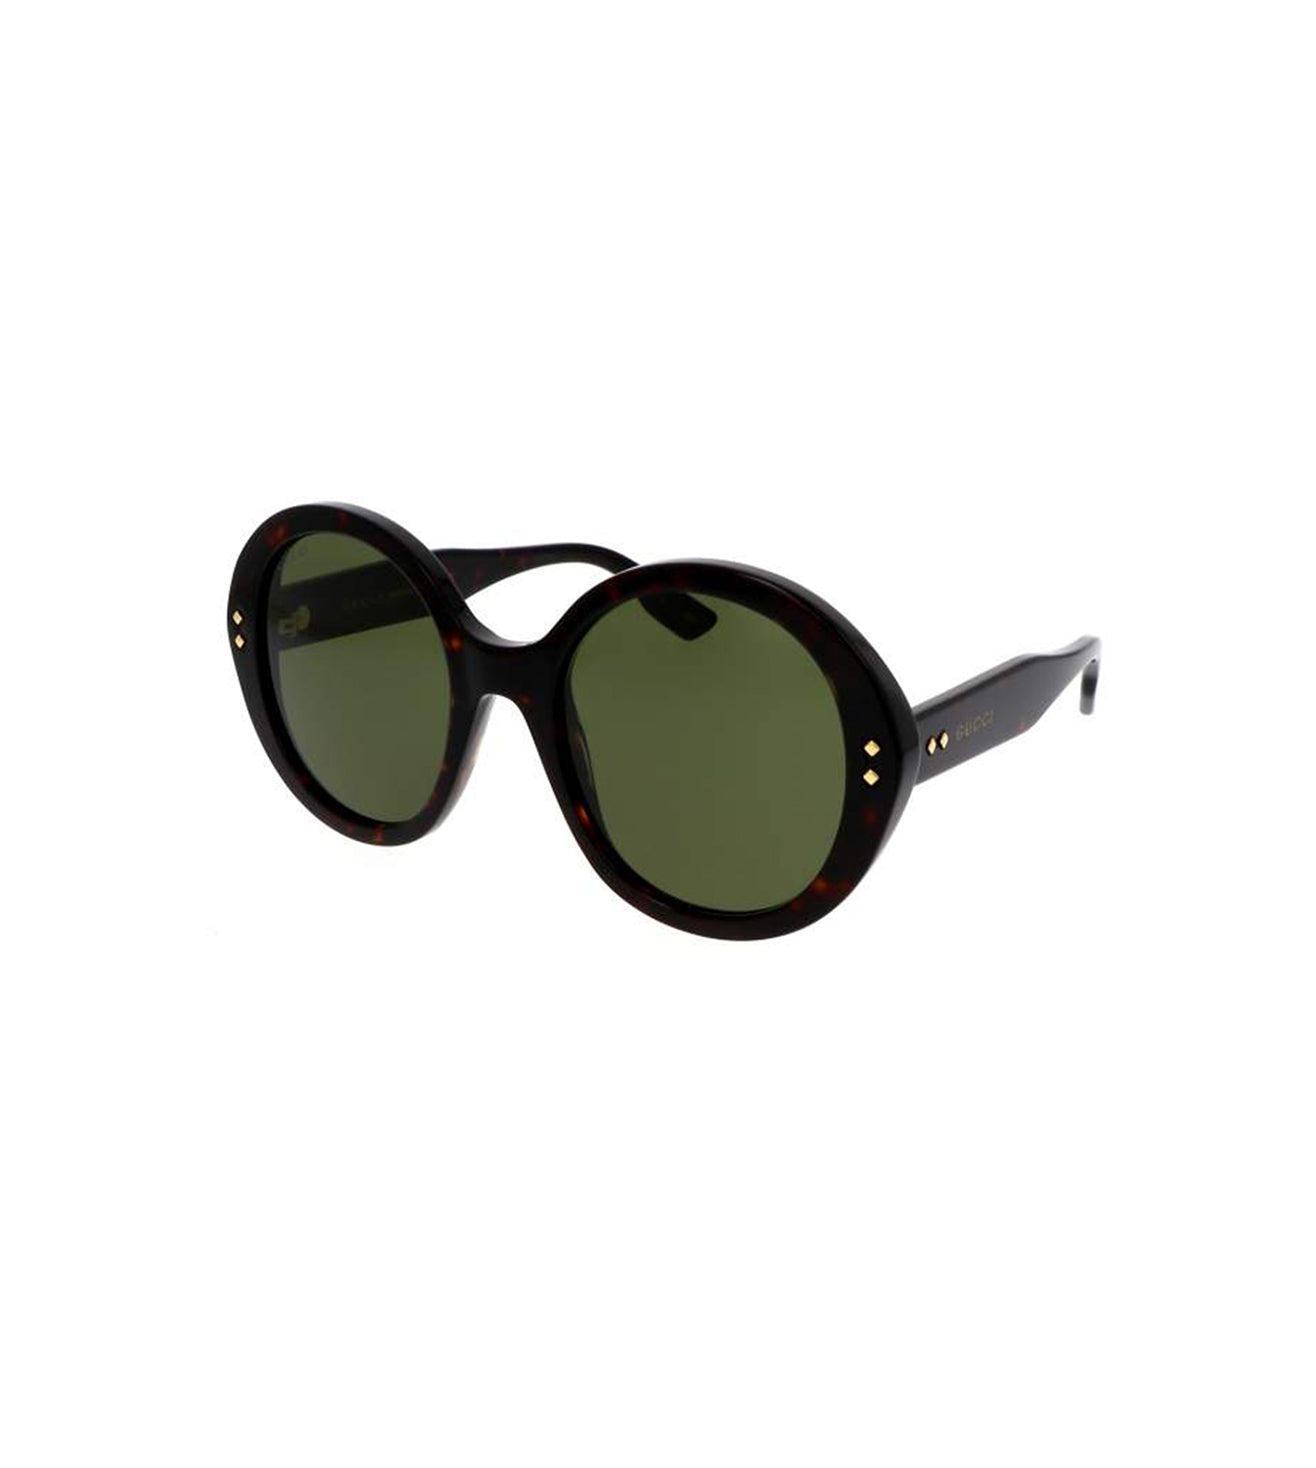 Gucci Women's Green Round Sunglasses